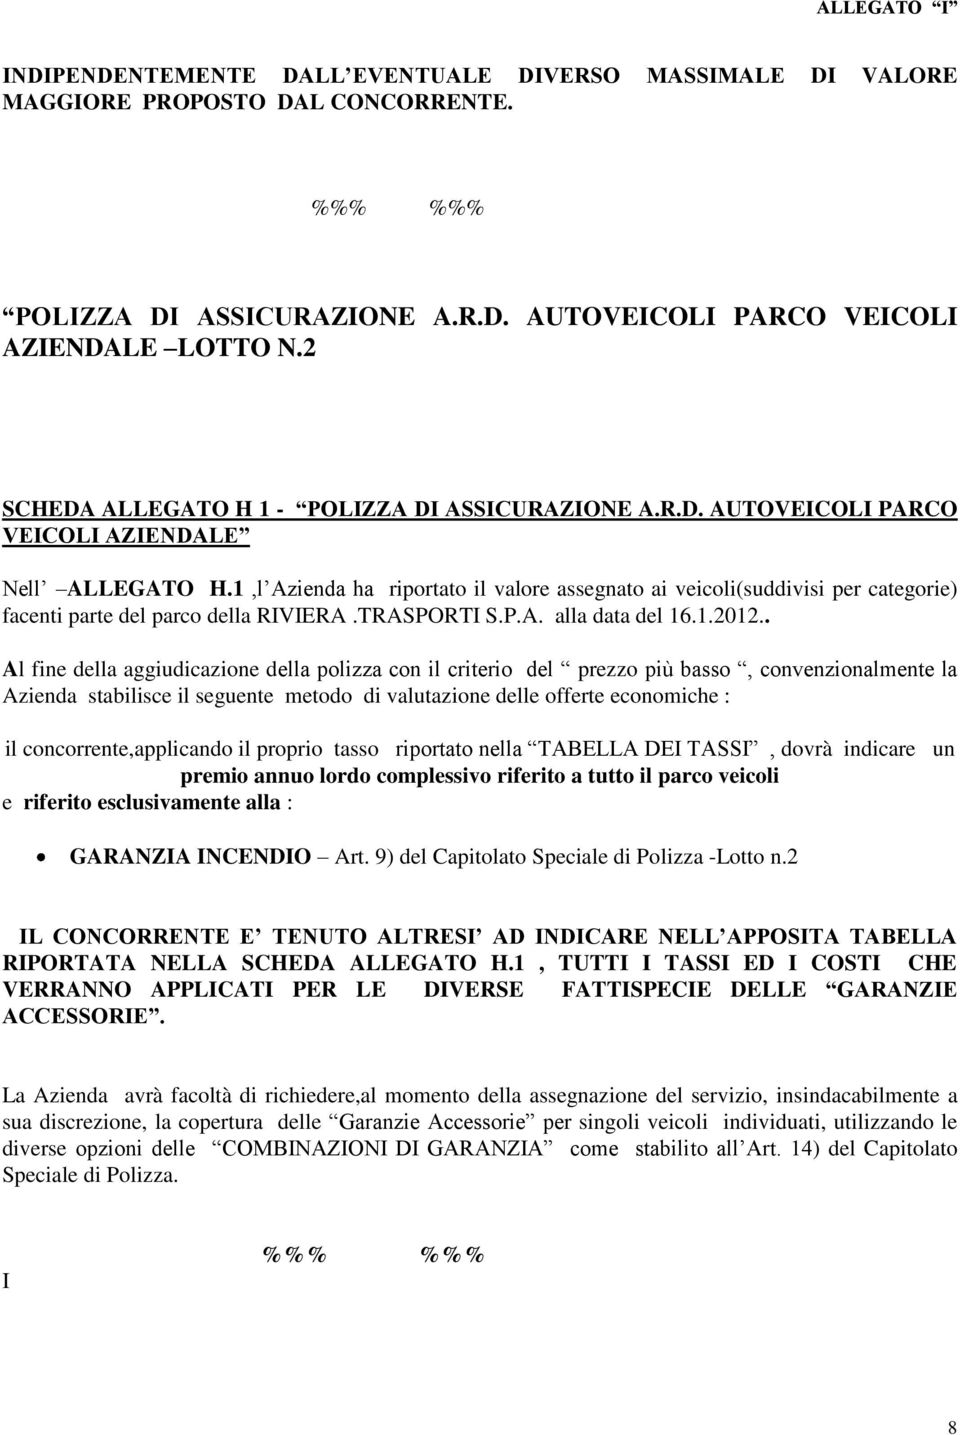 1,l Azienda ha riportato il valore assegnato ai veicoli(suddivisi per categorie) facenti parte del parco della RIVIERA.TRASPORTI S.P.A. alla data del 16.1.2012.